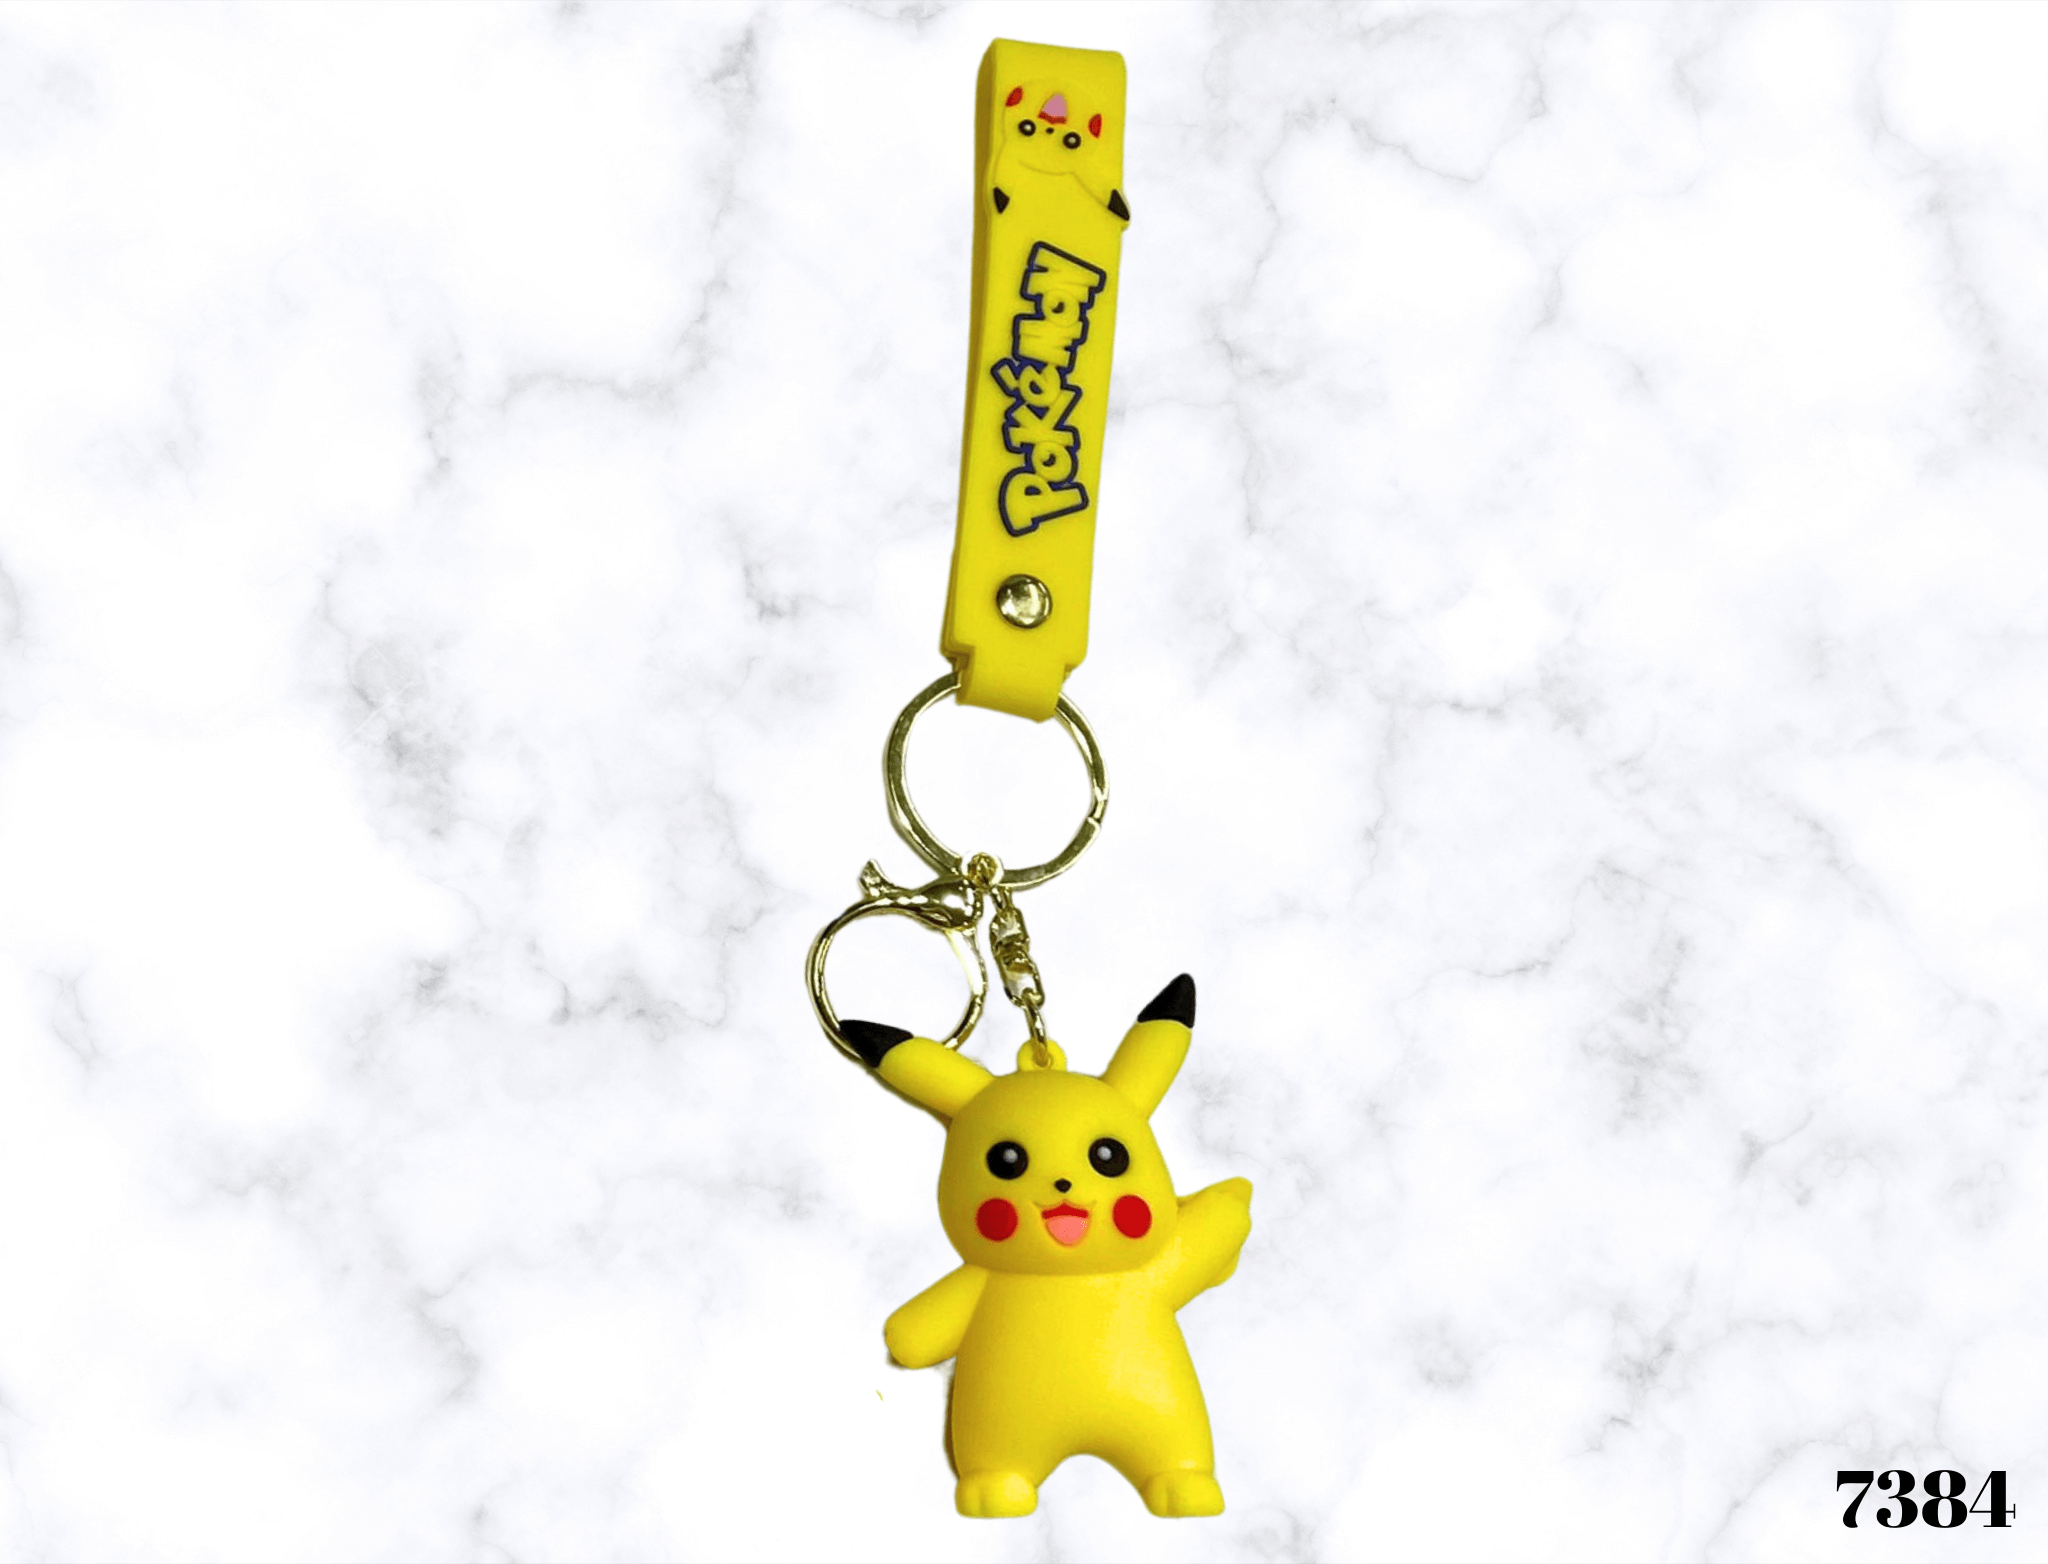 Oživite svoje ključeve s ovim 3D Pikachu privjeskom! Idealno kao poklon ili suvenir za ljubitelje crtanih. Dimenzije 12*5*8 cm. Ulovite ga sad!